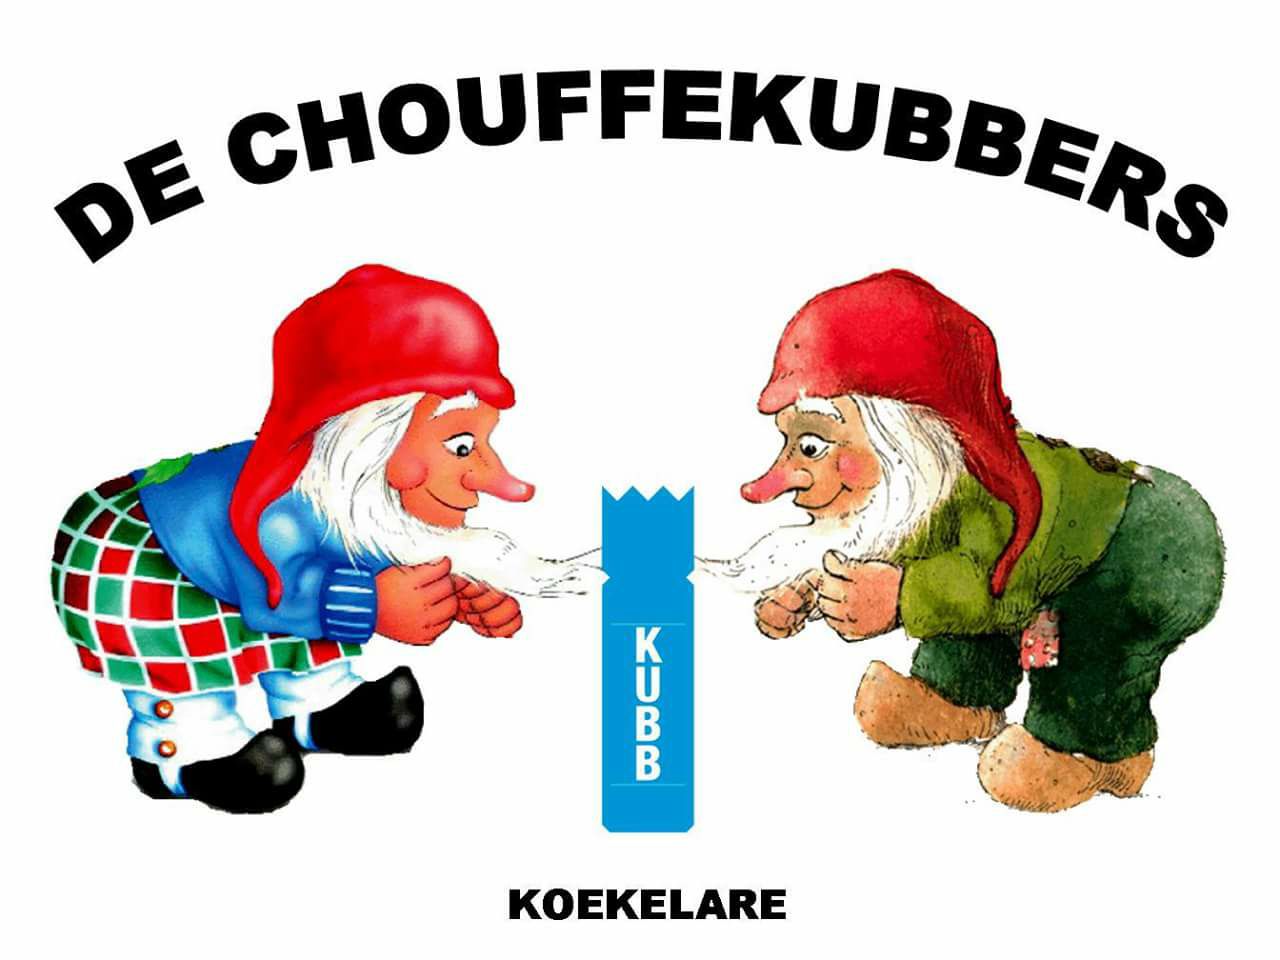 Chouffekubbers